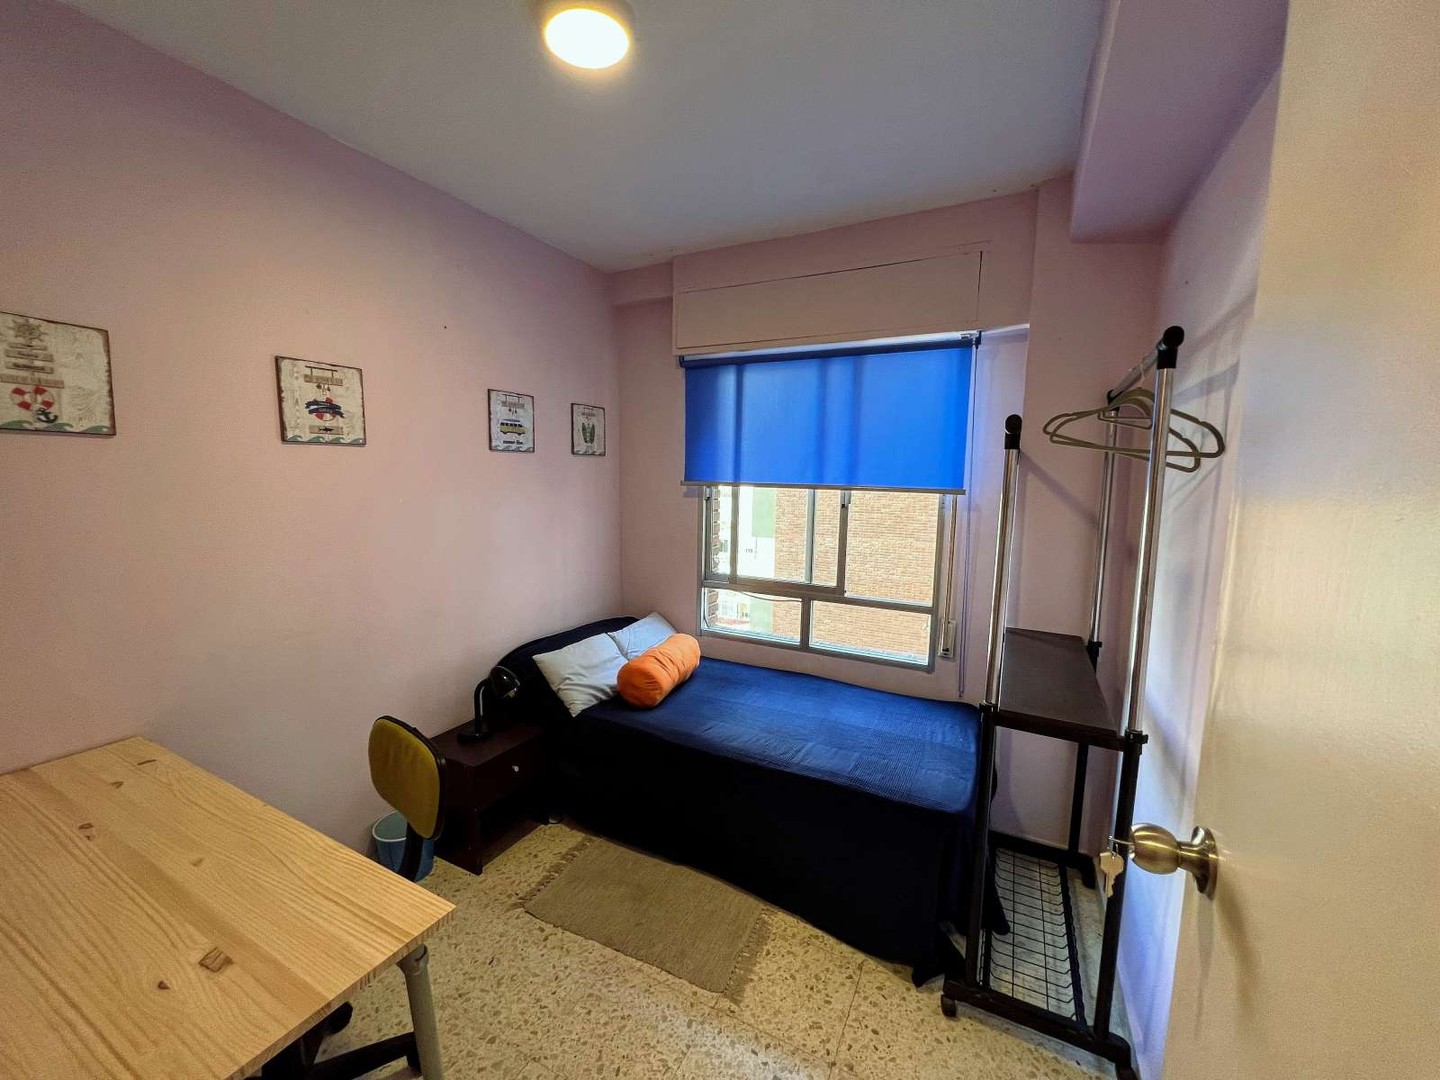 Habitación privada barata en Cartagena